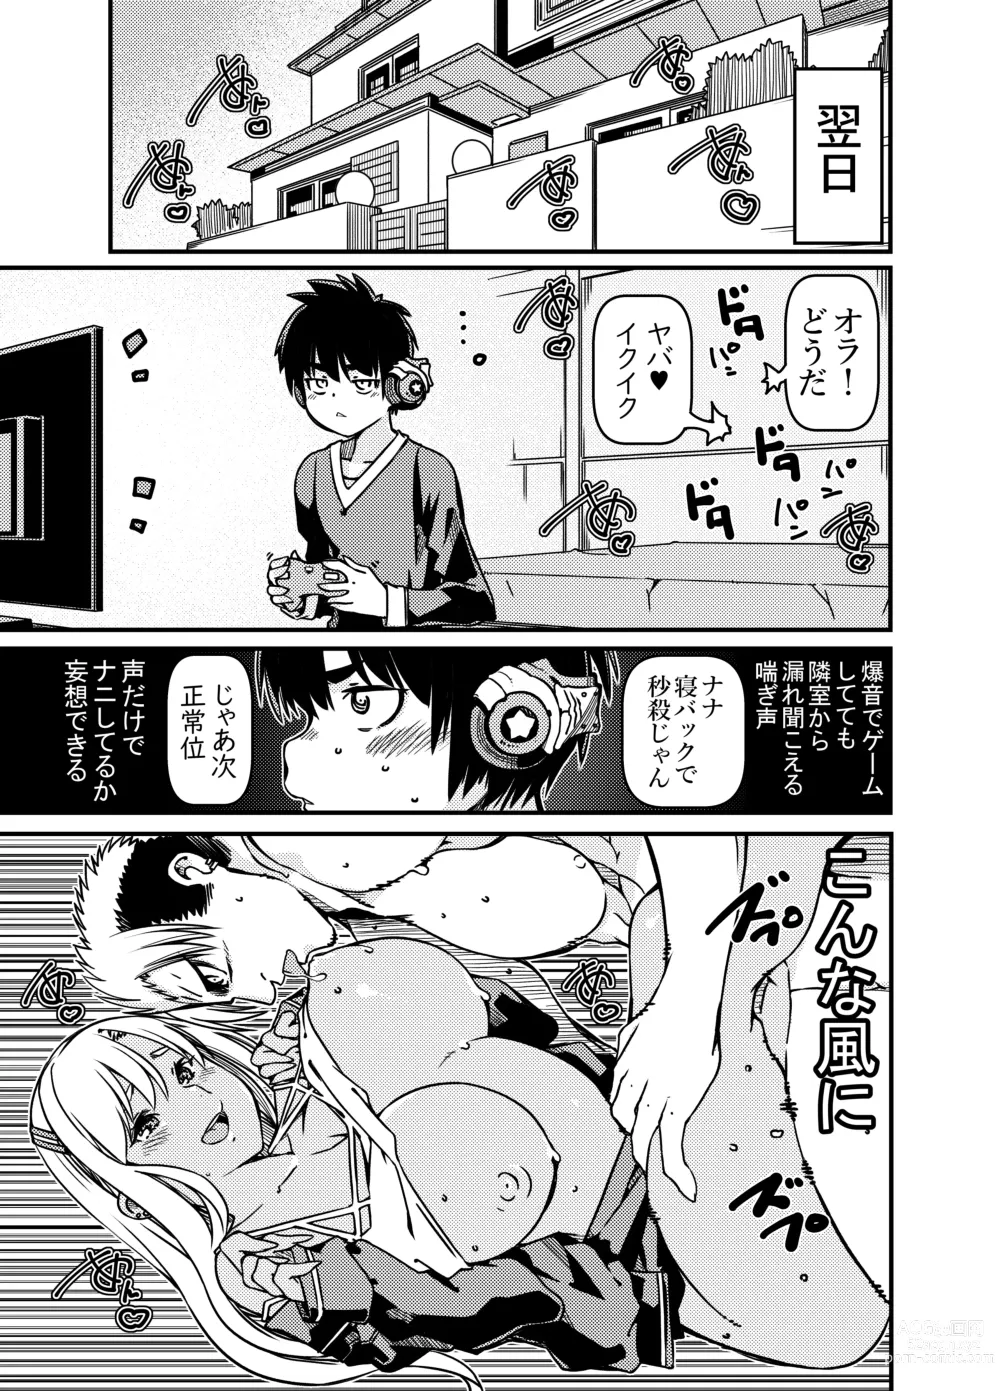 Page 6 of doujinshi Aniki no Kanojo no Kuro Gal to Heya ni Tojikomeraretan dakedo?